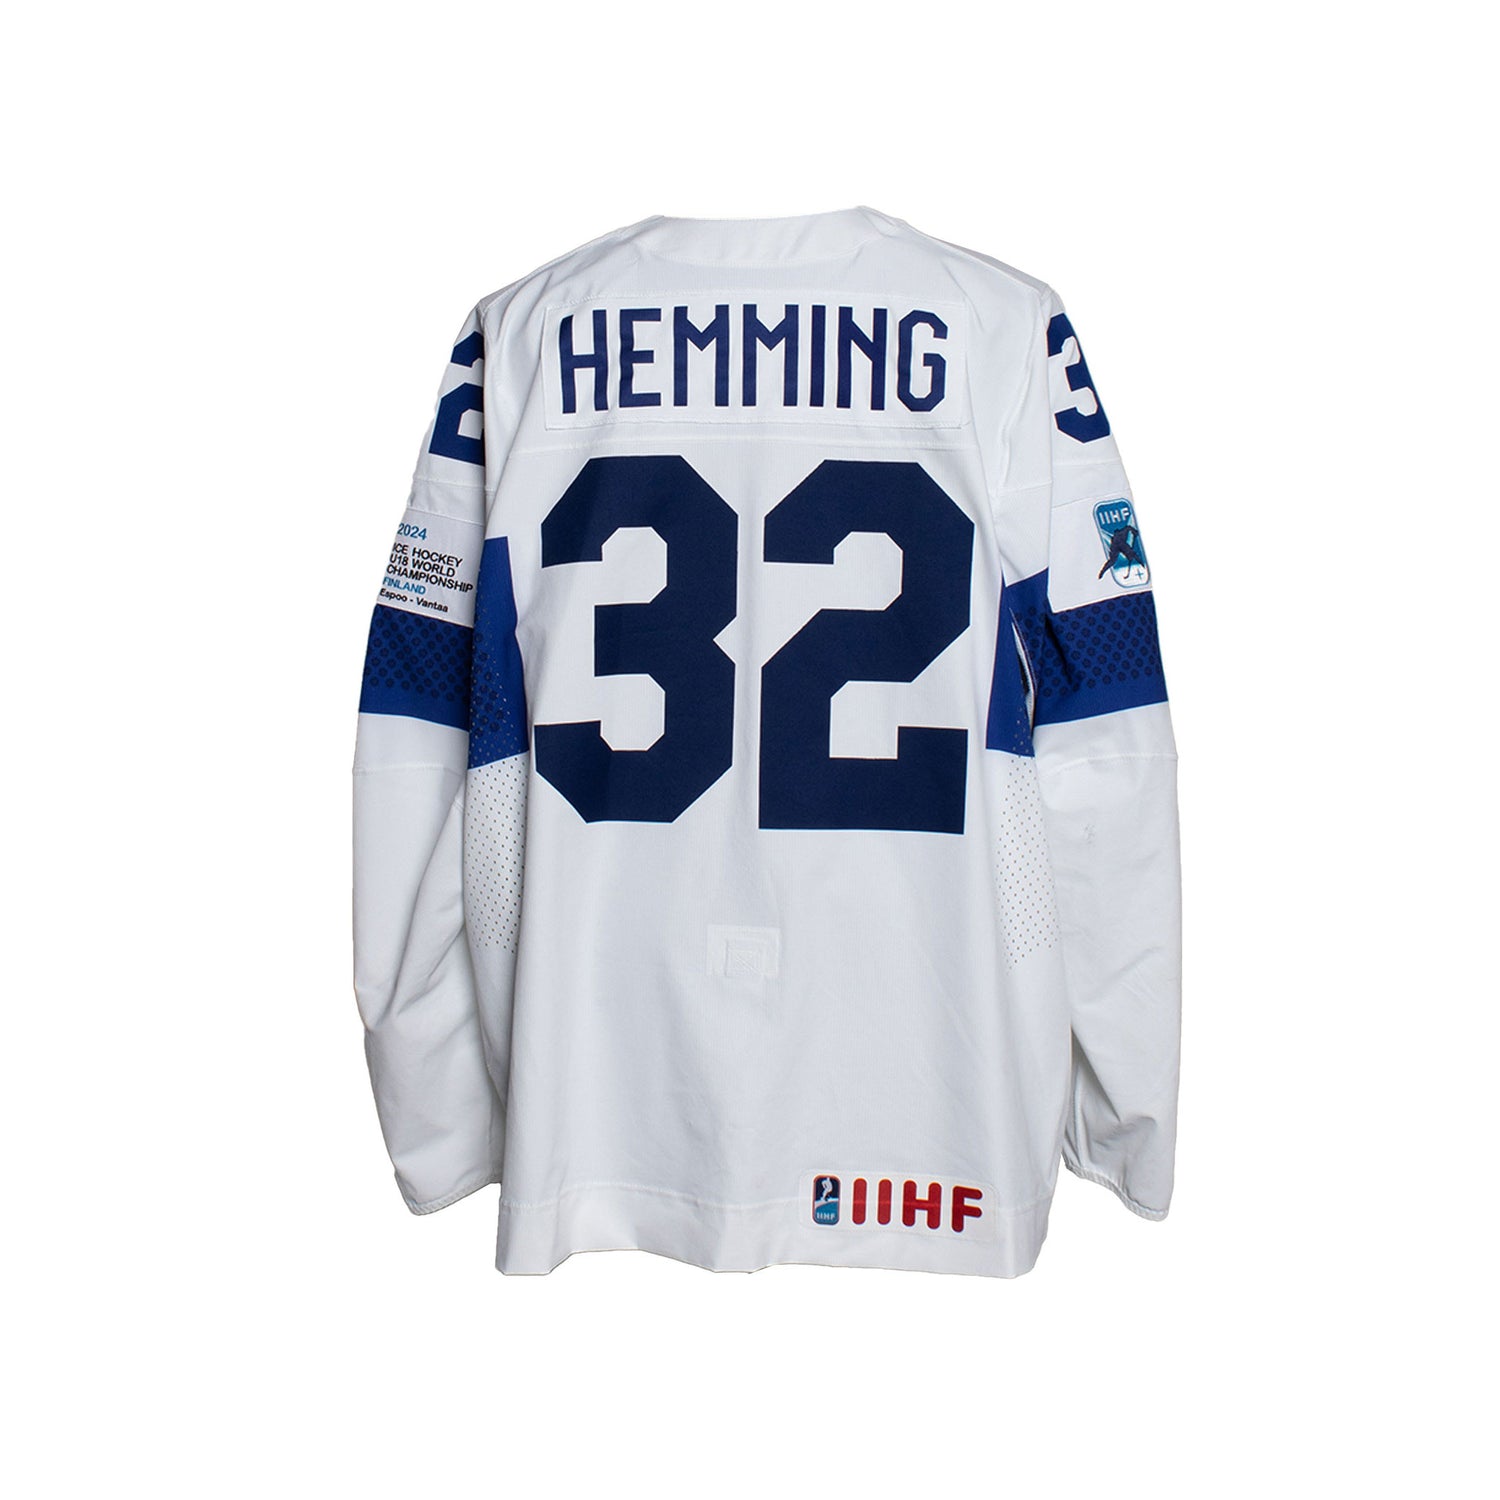 Emil Hemming #32 Game Worn, Away Jersey